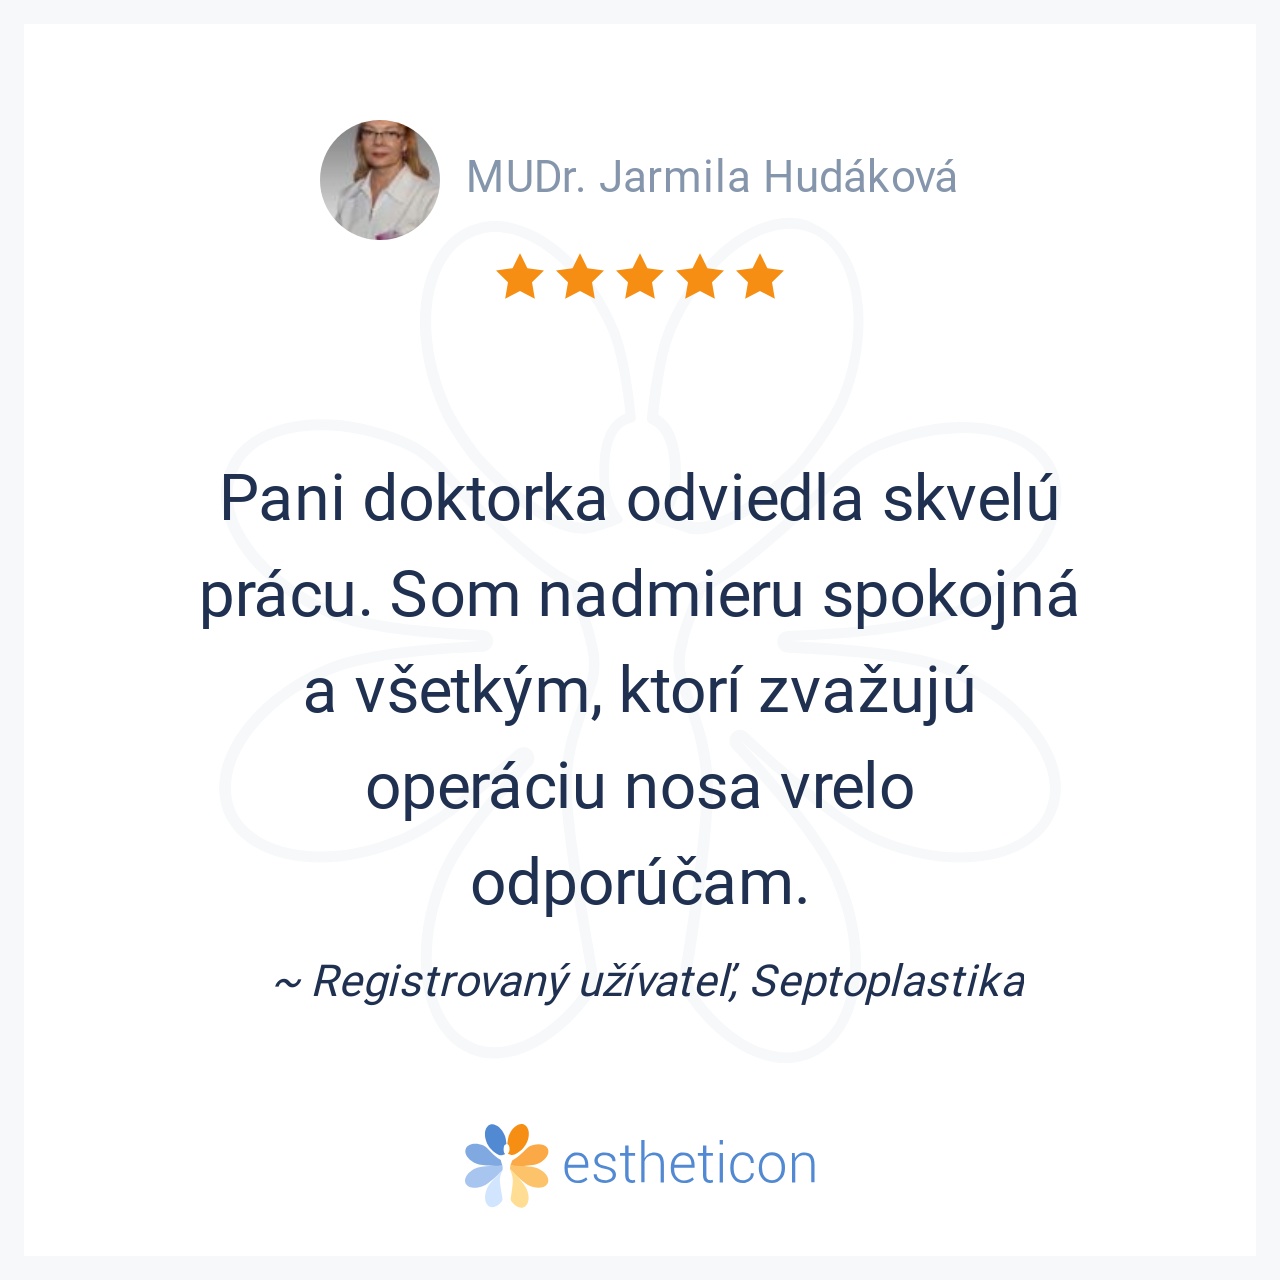 Estheticon.sk